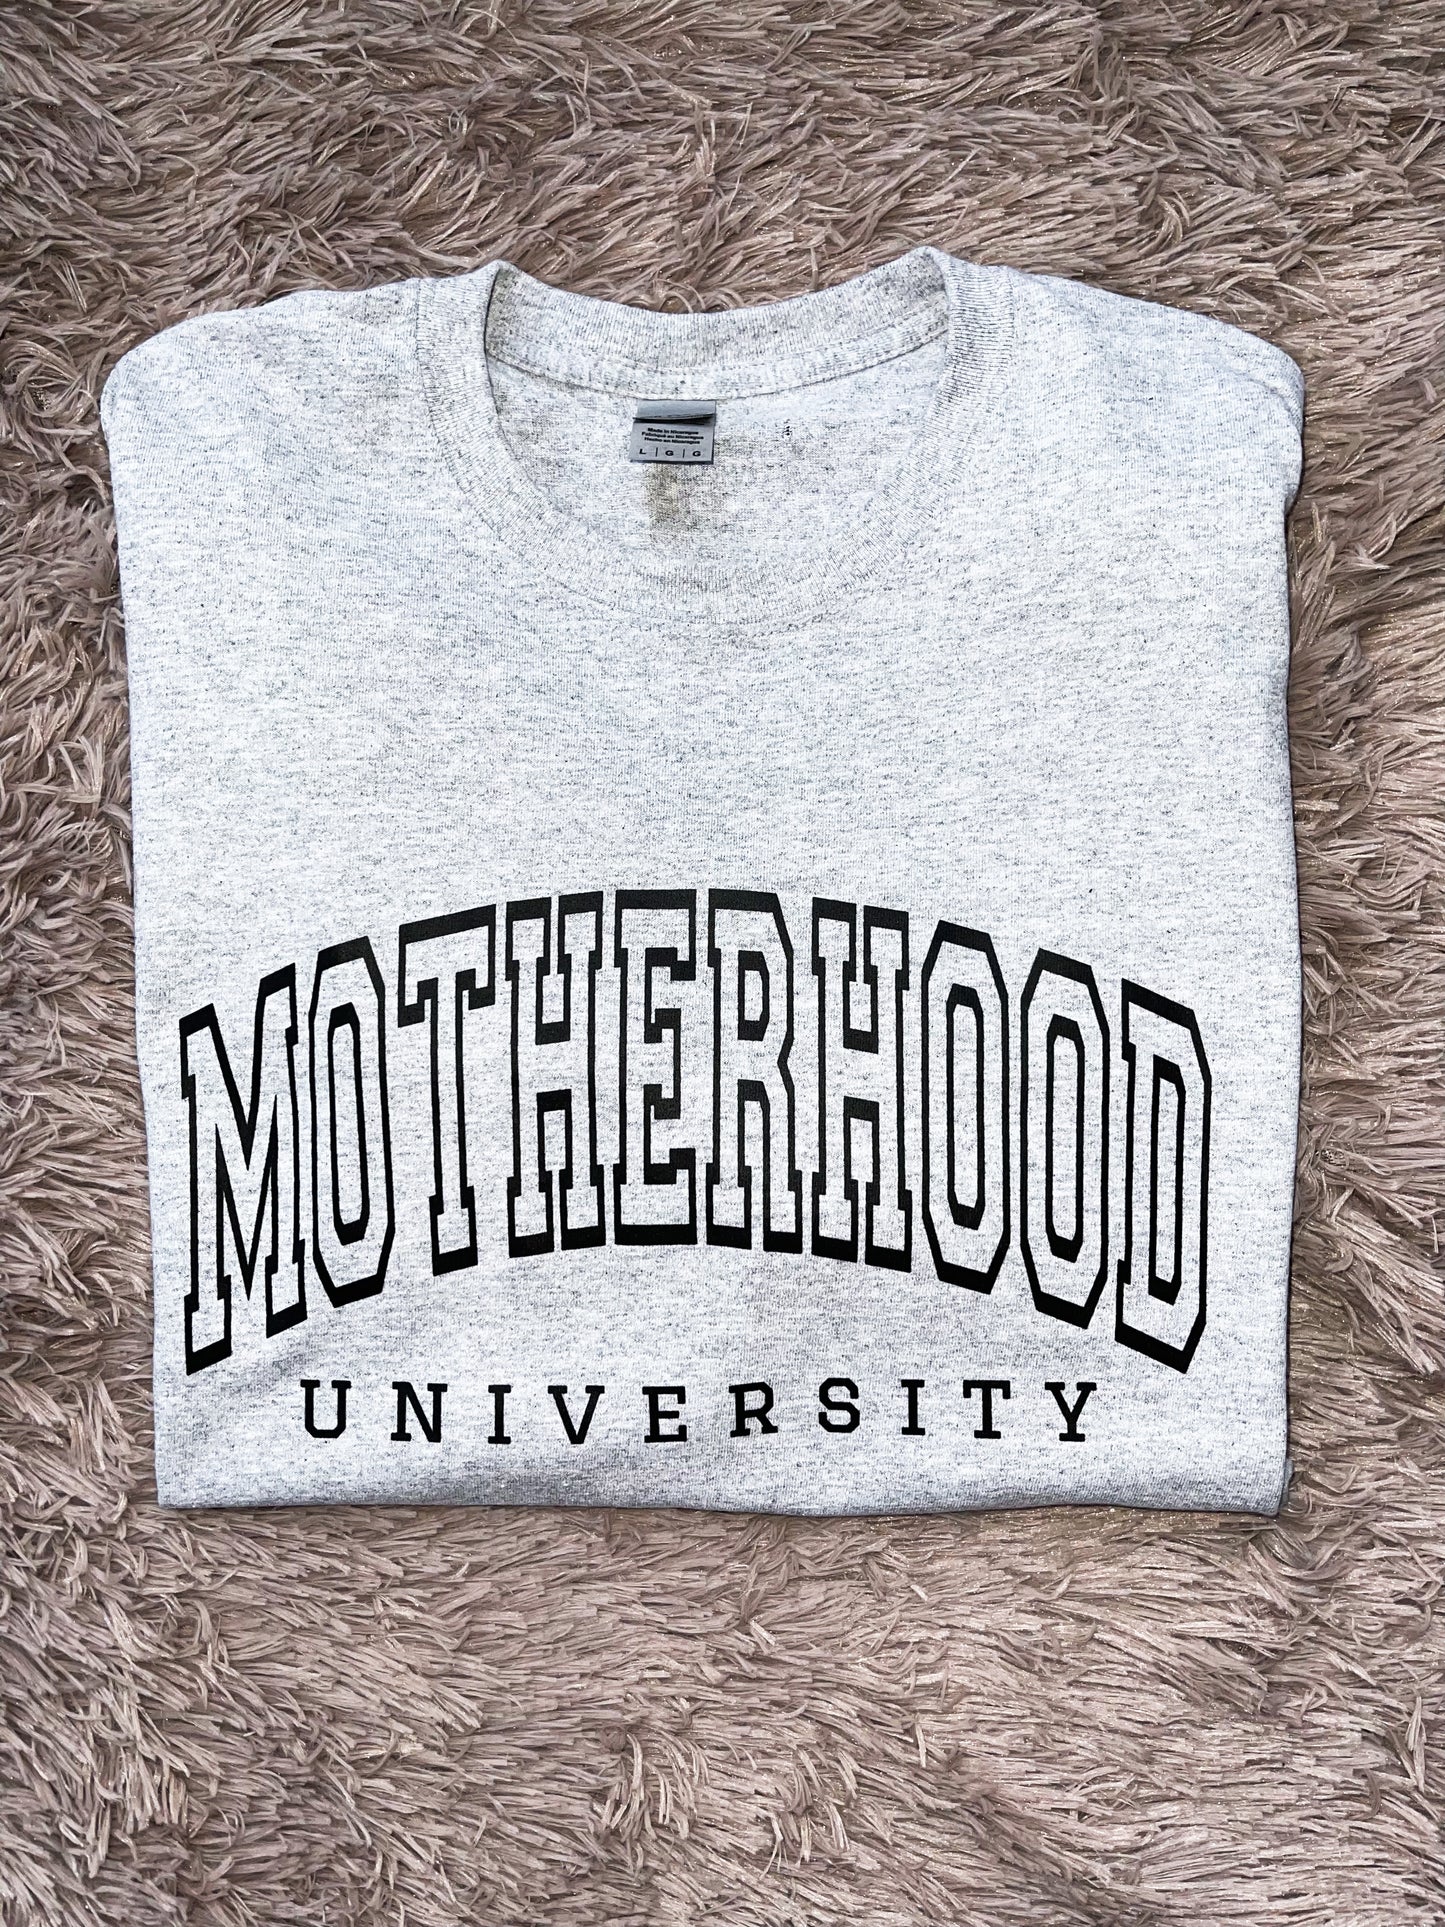 Motherhood university